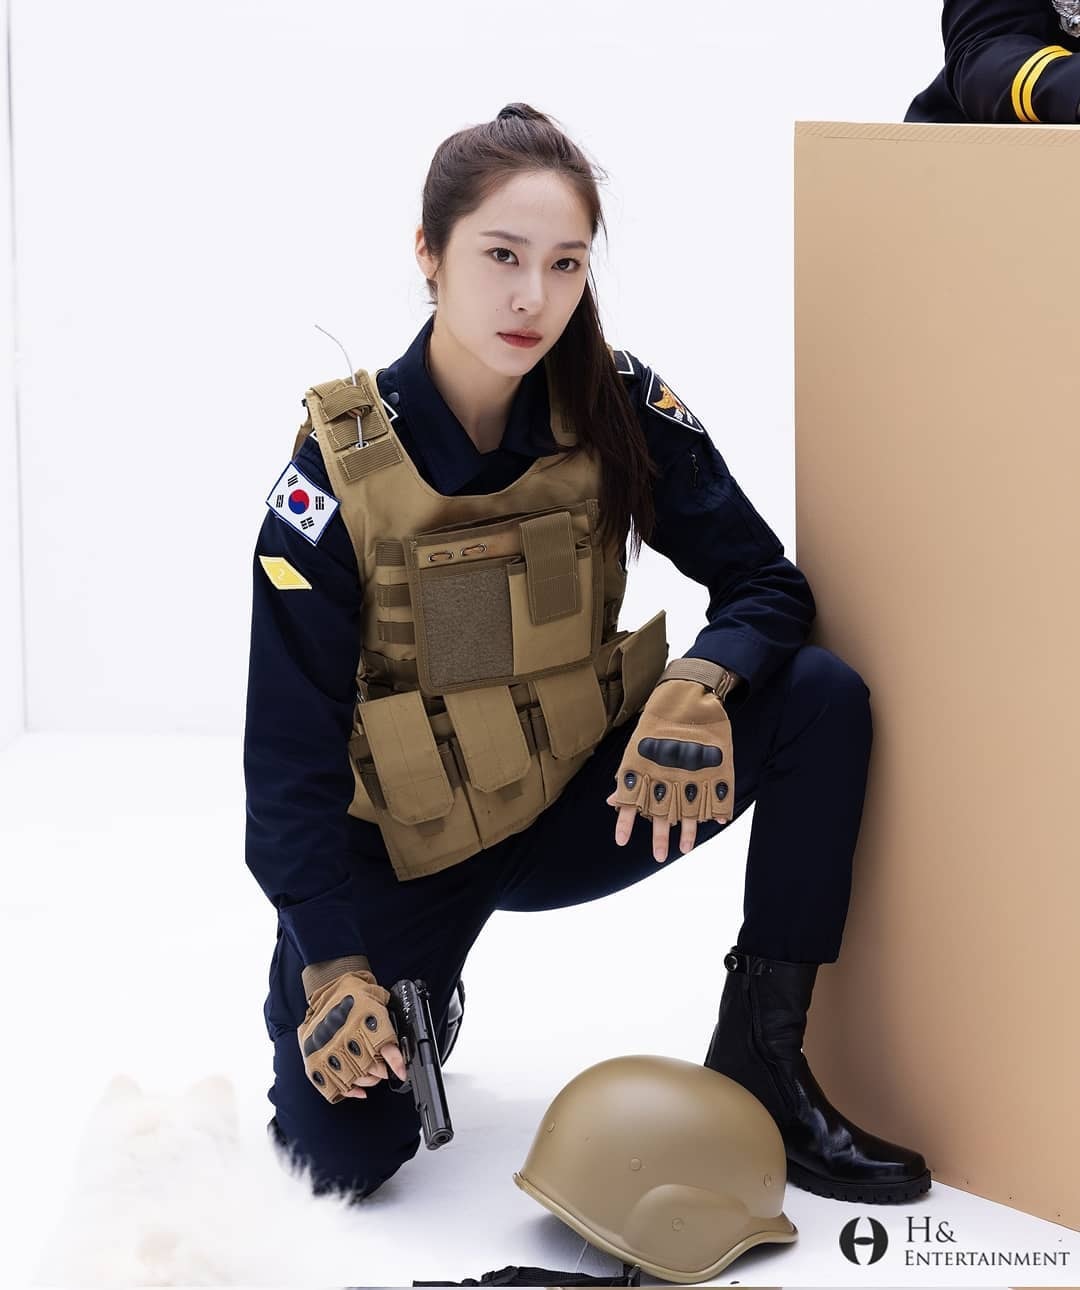 Cô cảnh sát trong bộ đồng phục cảnh vệ xanh navy, chân đi combat boot, mặc áo bảo hộ, tay cầm súng 'chất lừ'